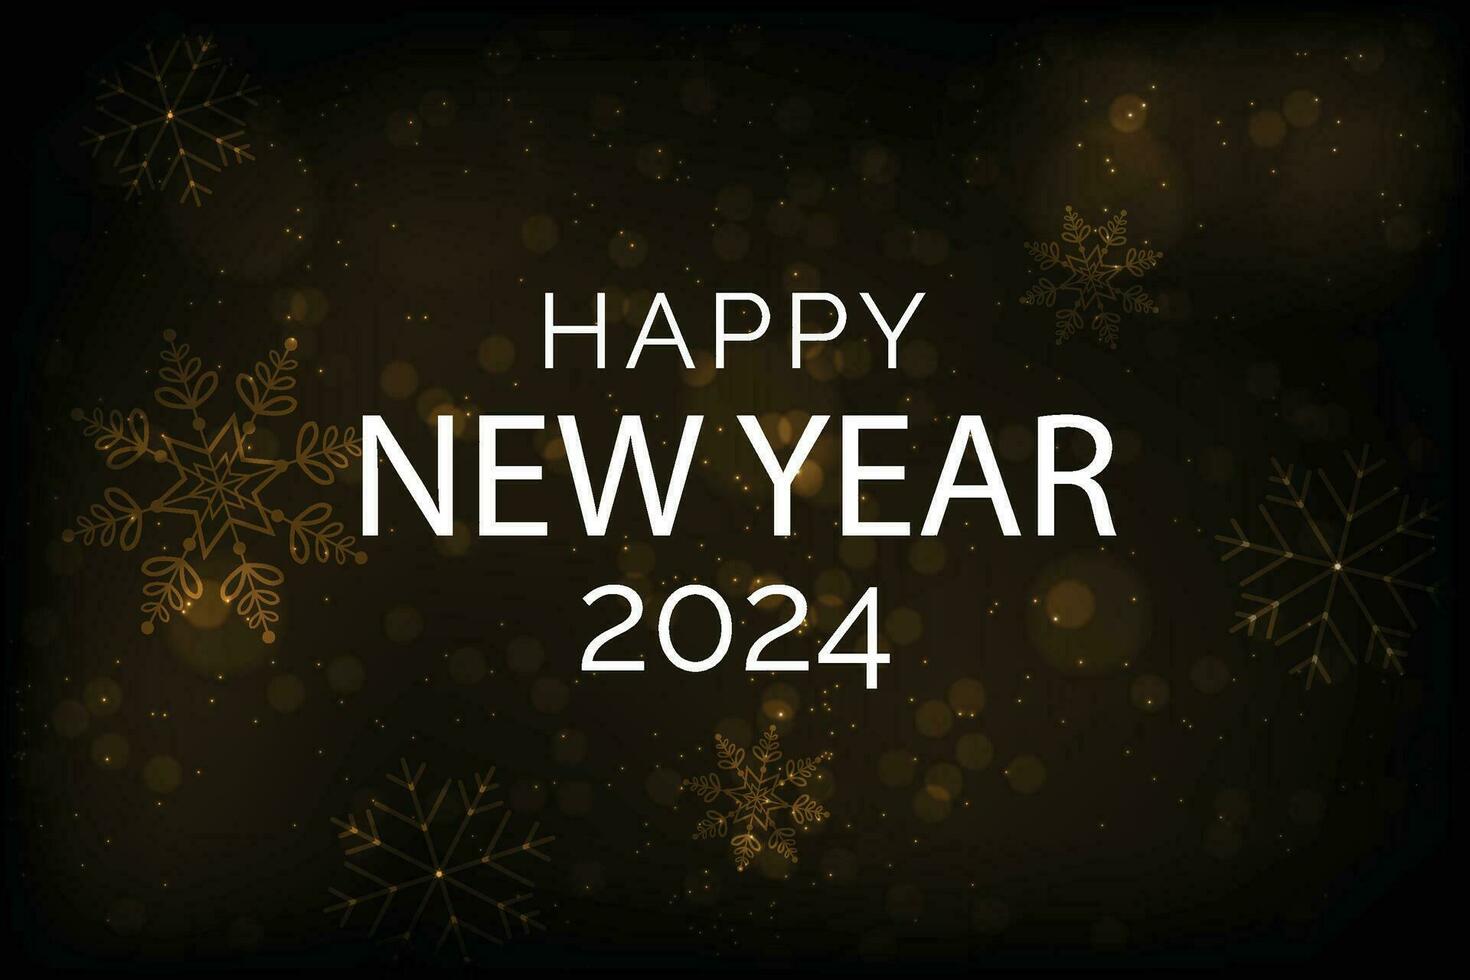 Lycklig ny år 2024 fyrkant mall med 3d hängande siffra. hälsning begrepp för 2024 ny år firande vektor